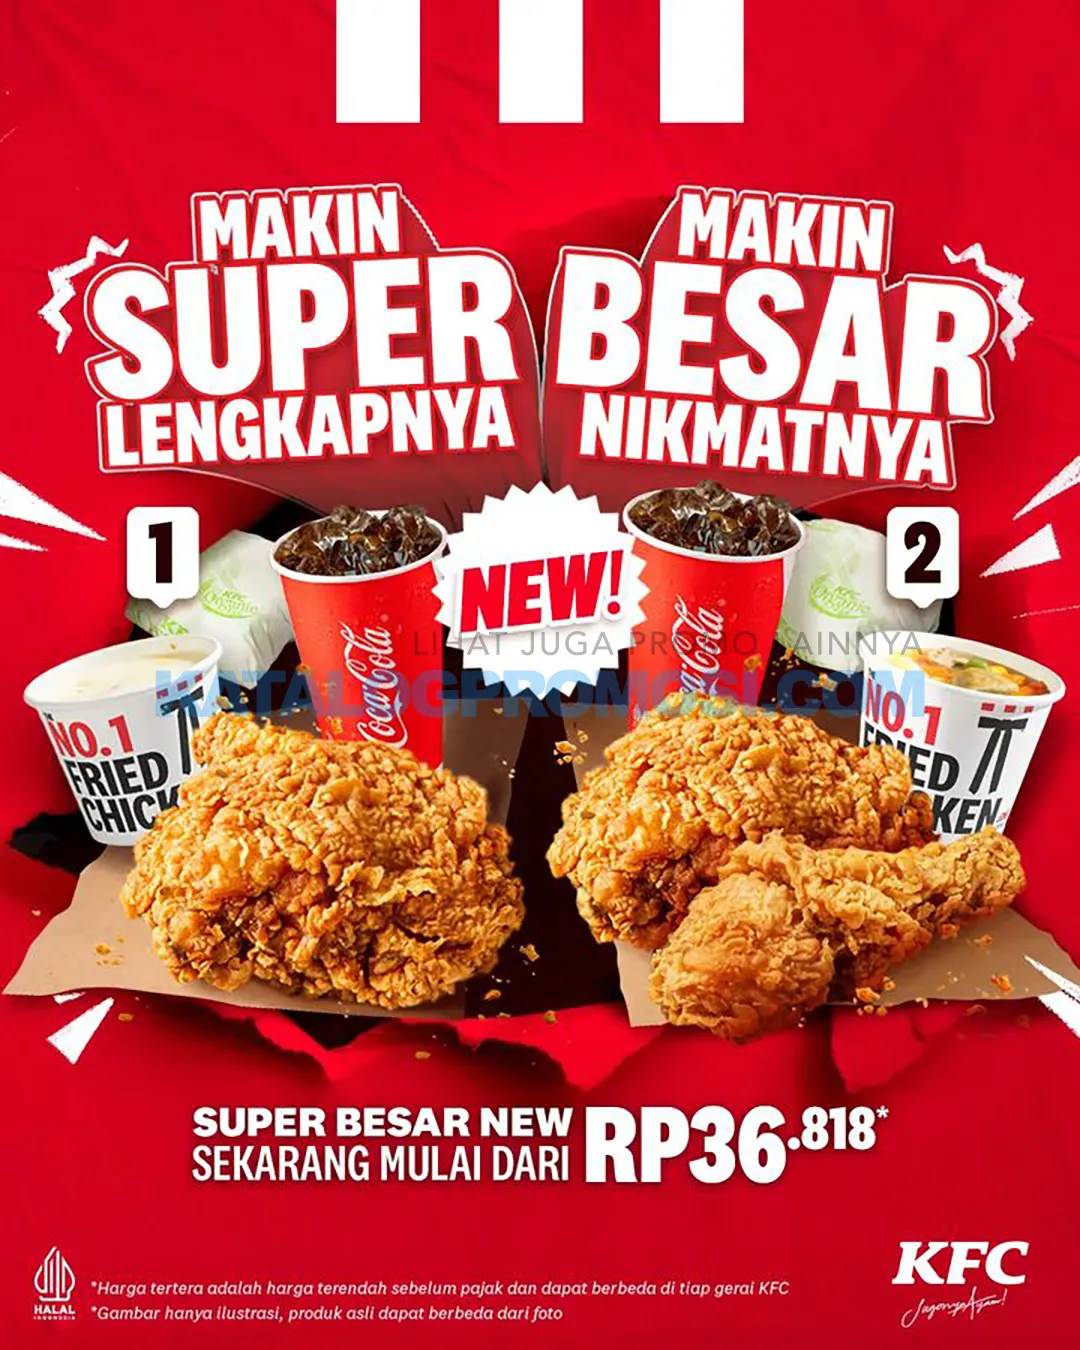 Promo KFC SUPER BESAR NEW! HARGA PAKET mulai dari Rp. 36.818*